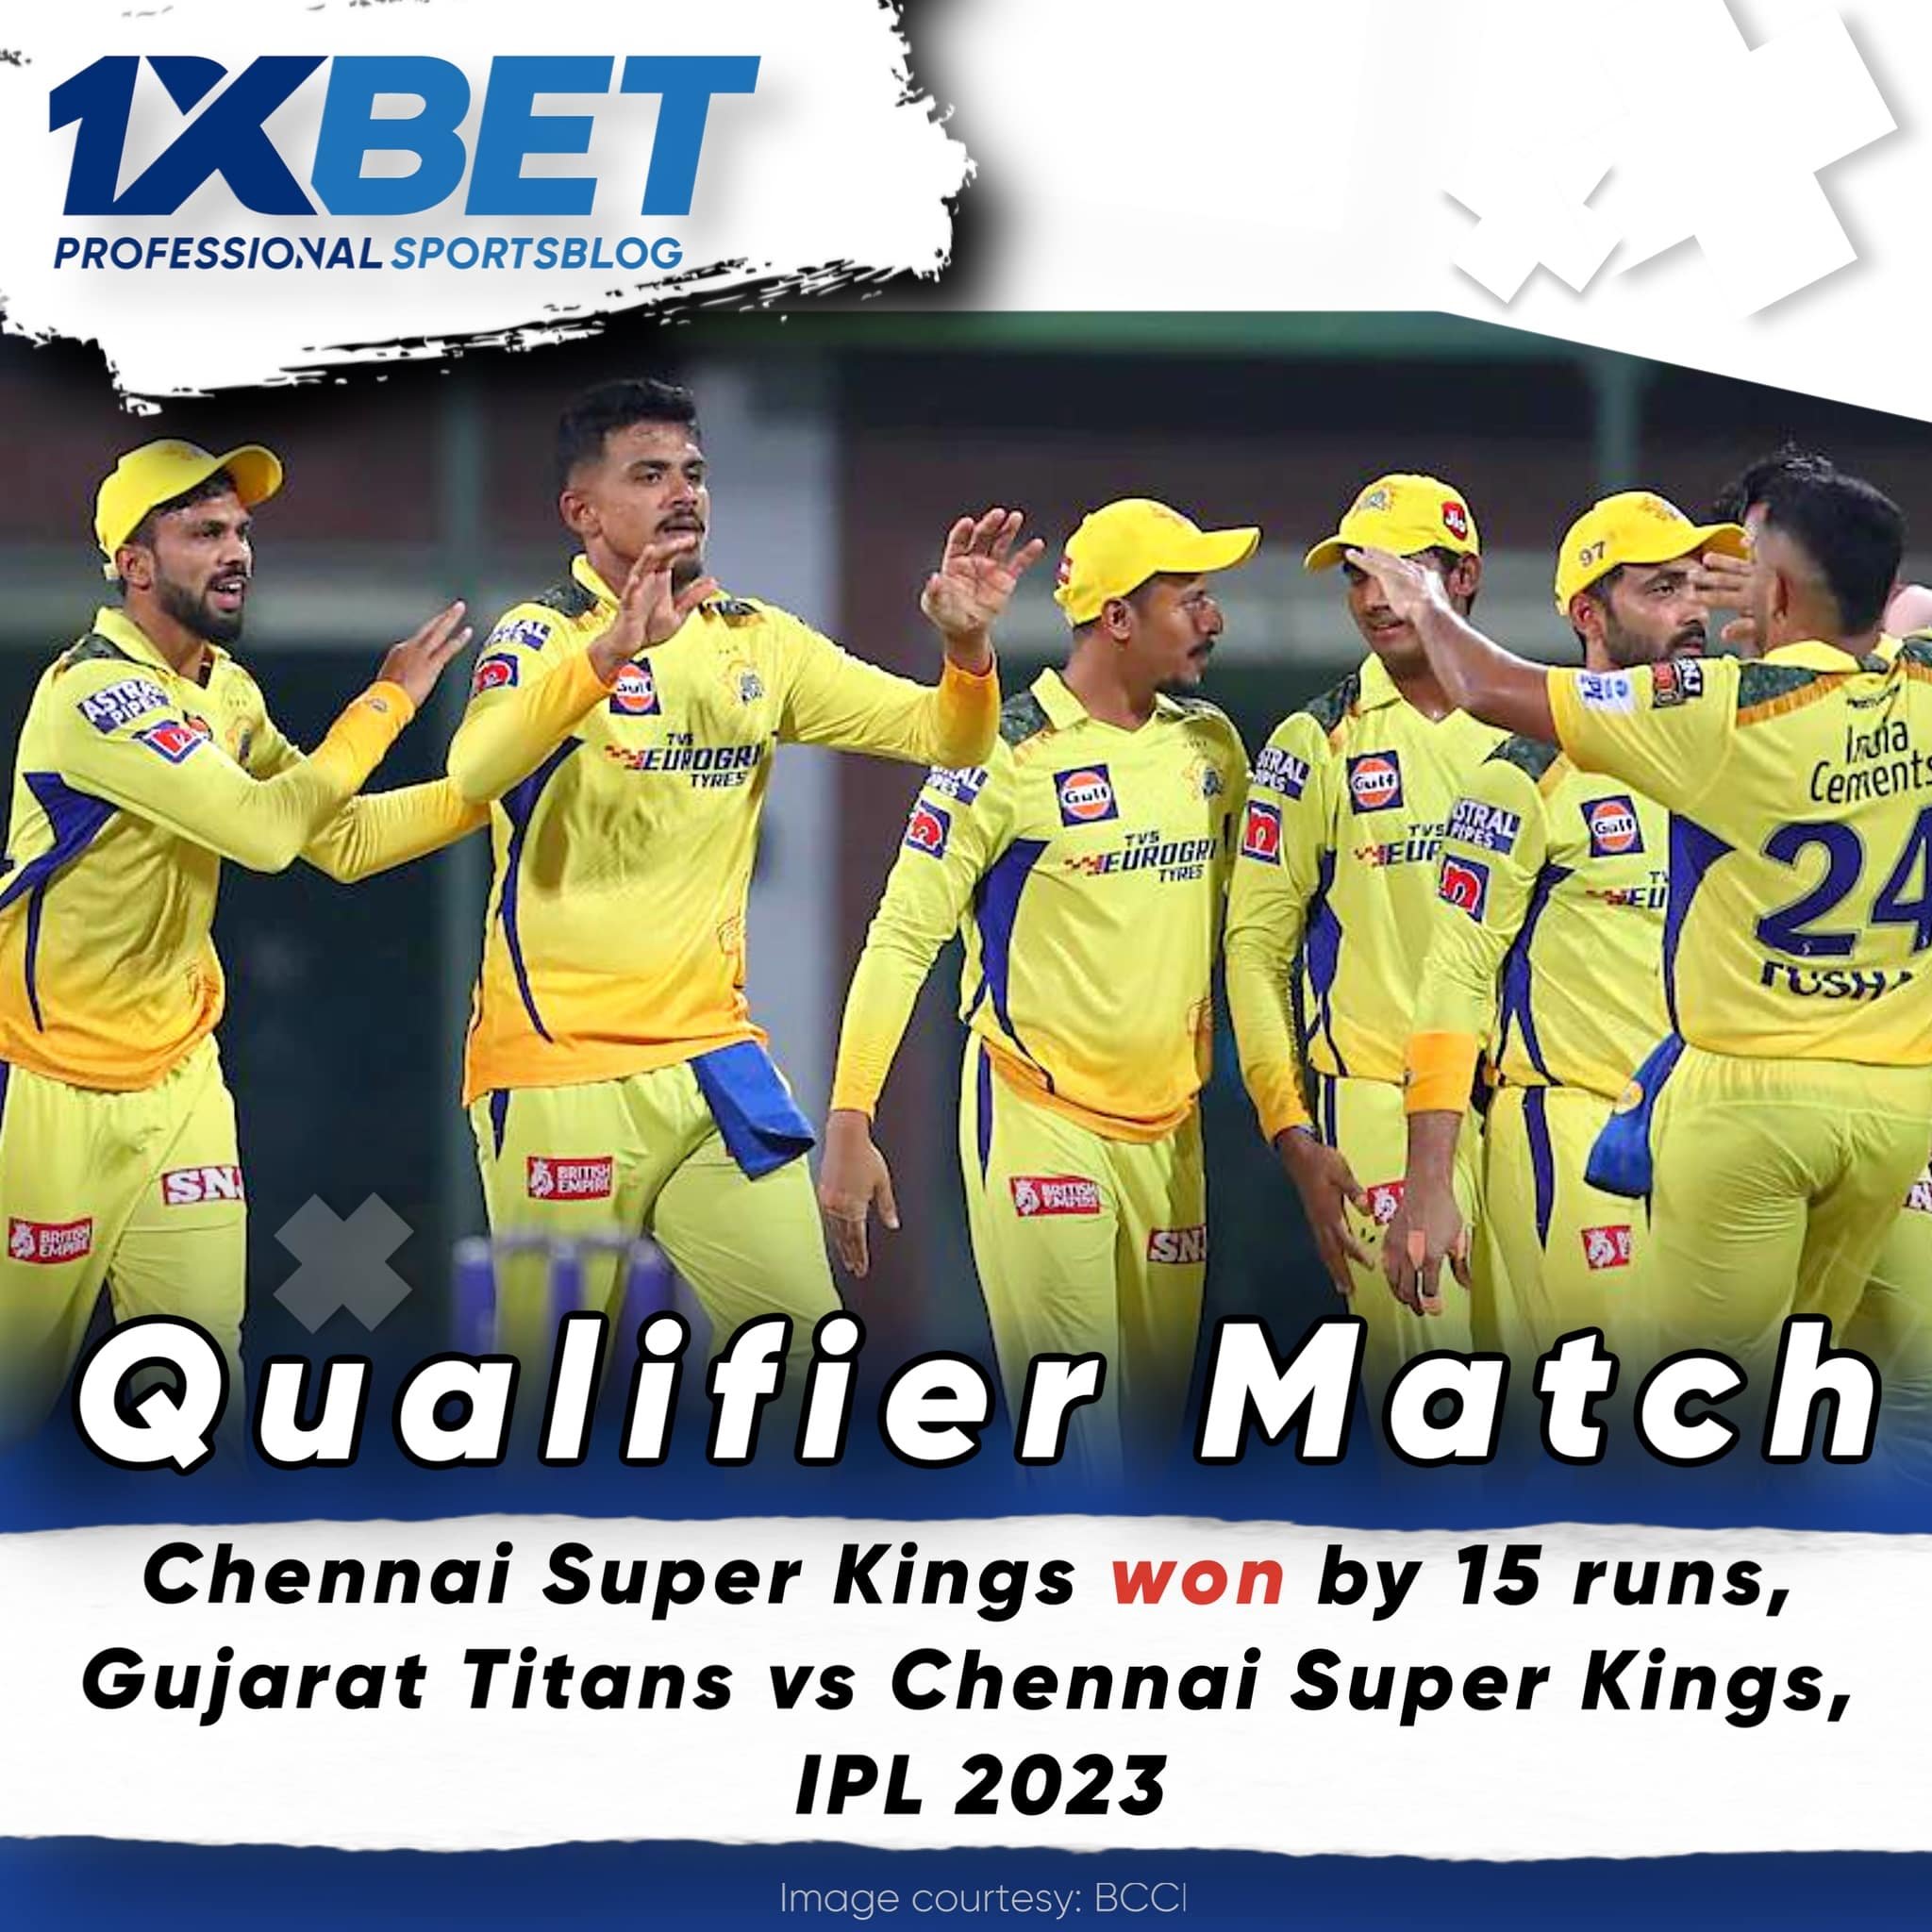 Chennai Super Kings won by 15 runs